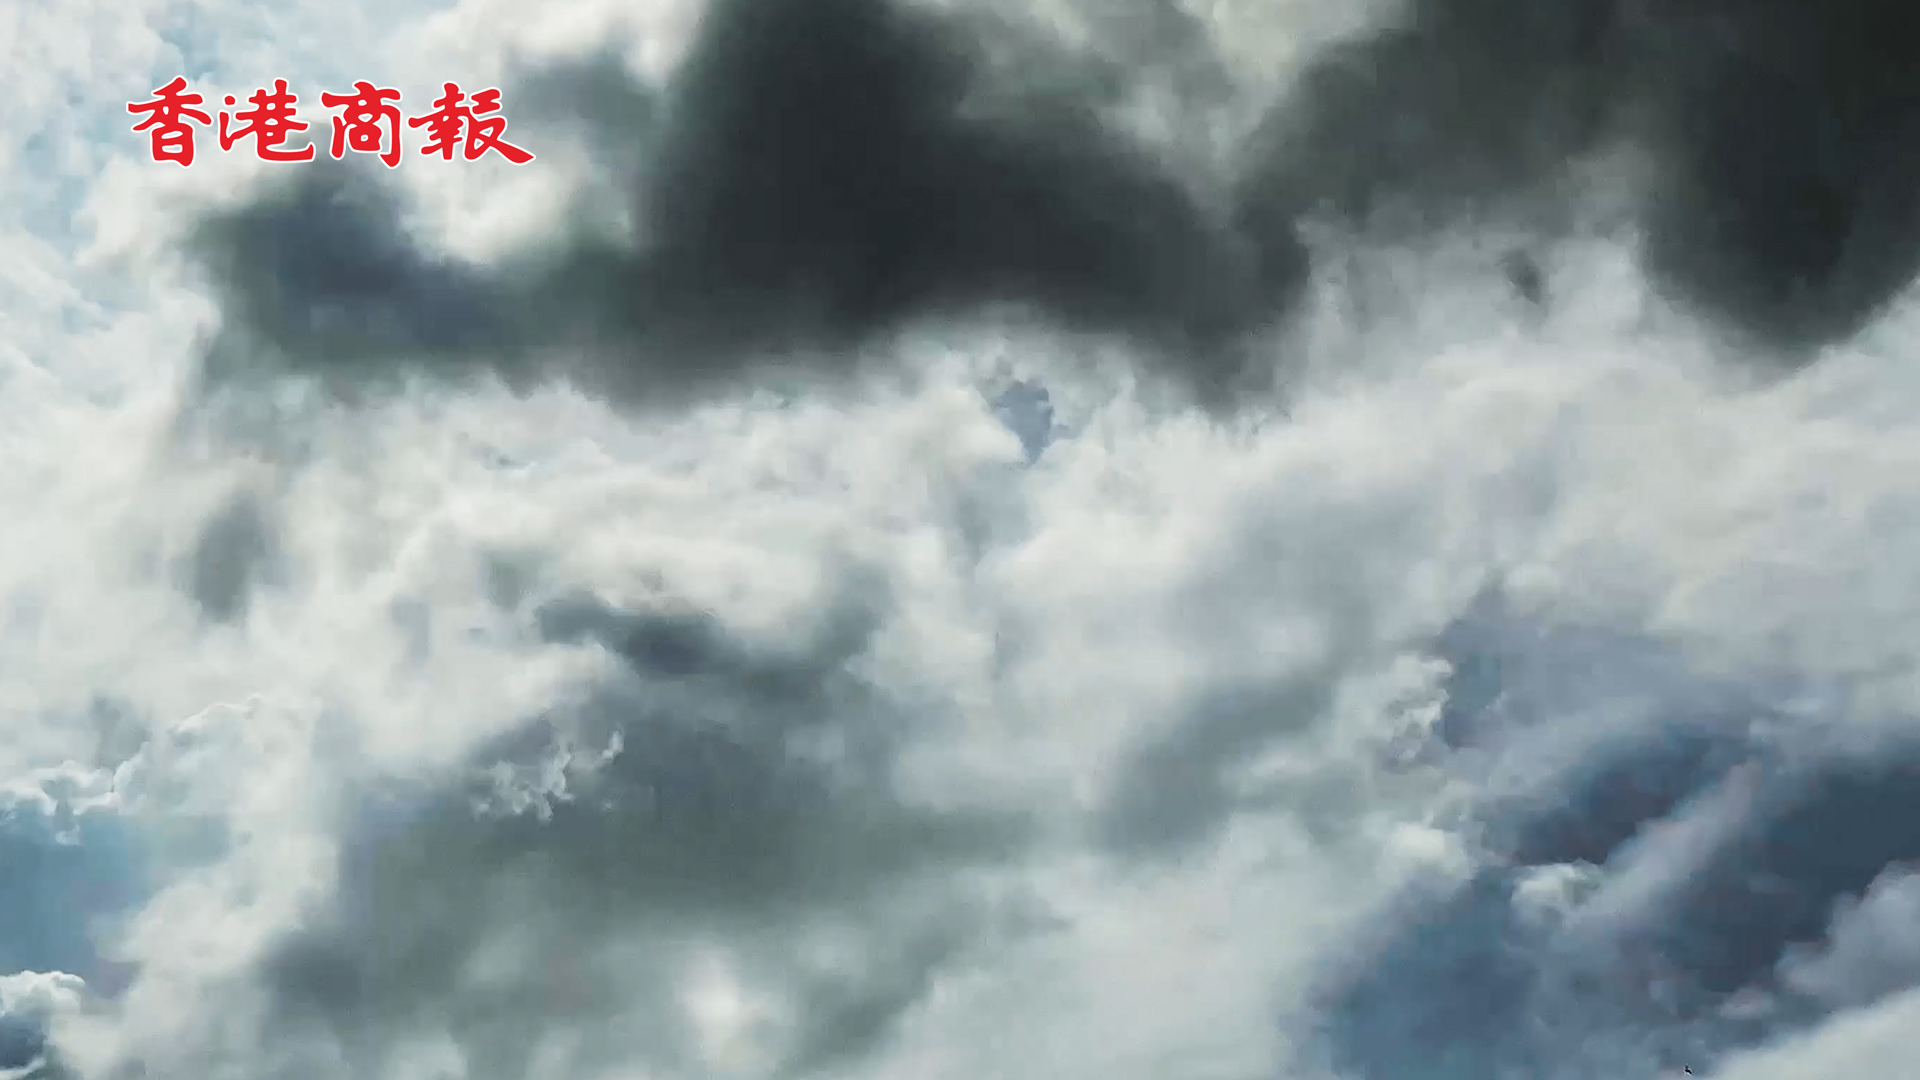 有片丨超強颱風「蘇拉」向廣東沿海靠近 料9月1日登陸粵東沿海